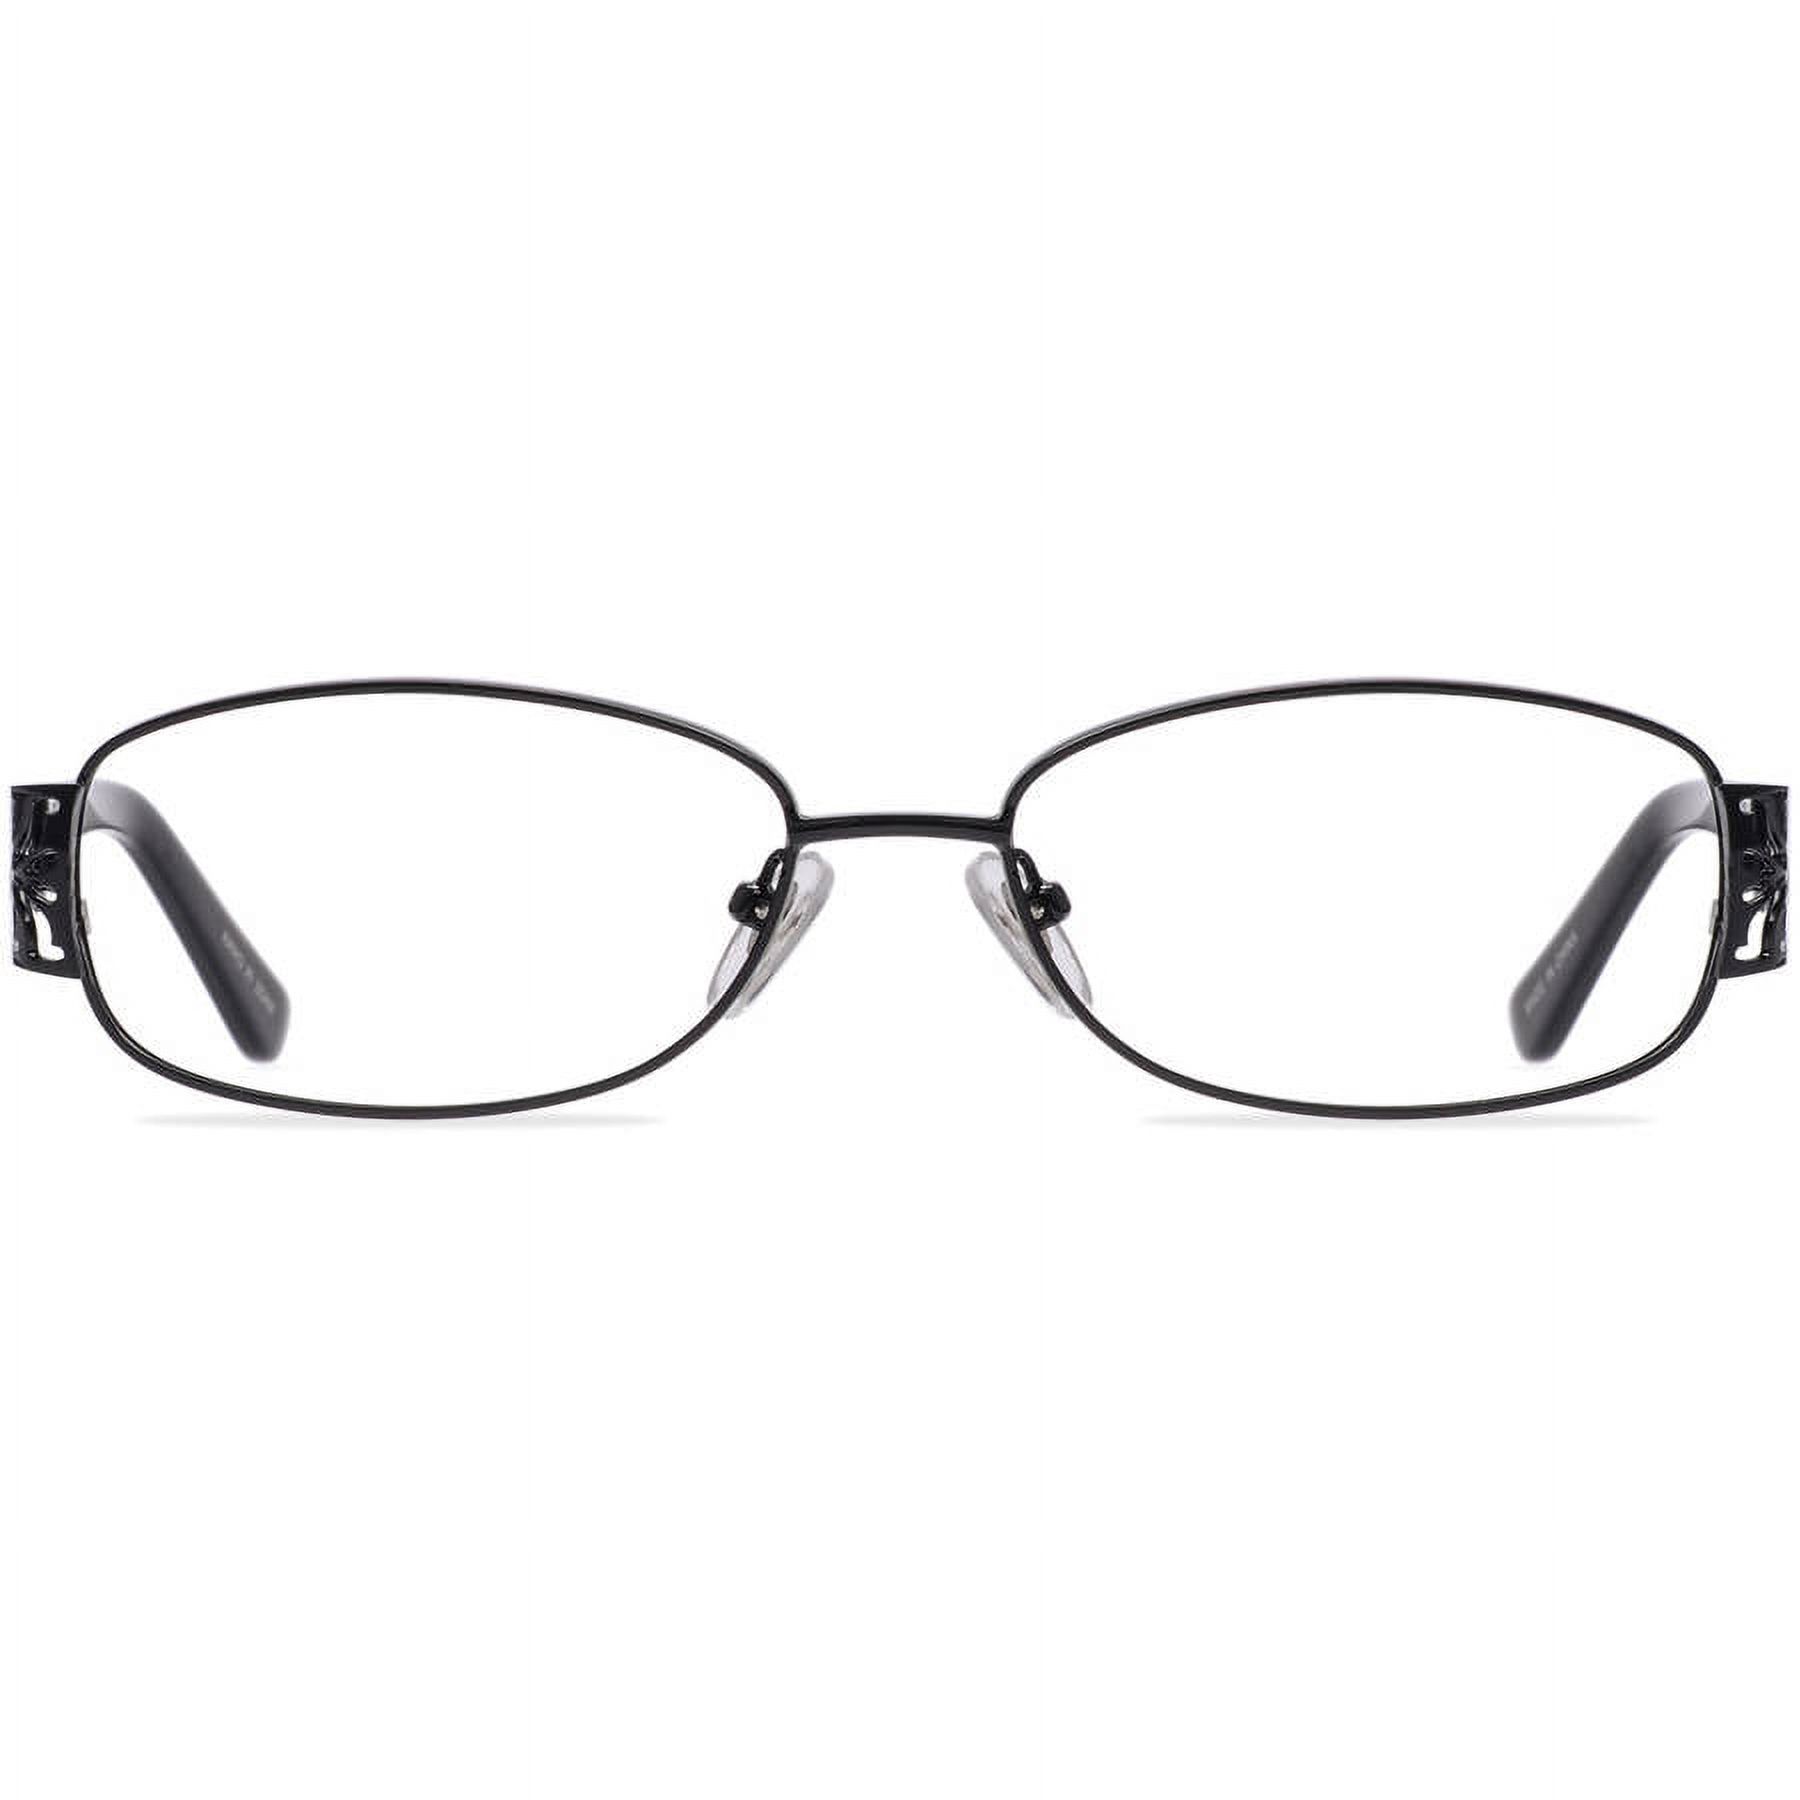 Contour Womens Prescription Glasses, FM12003 Shiny Black - Walmart.com